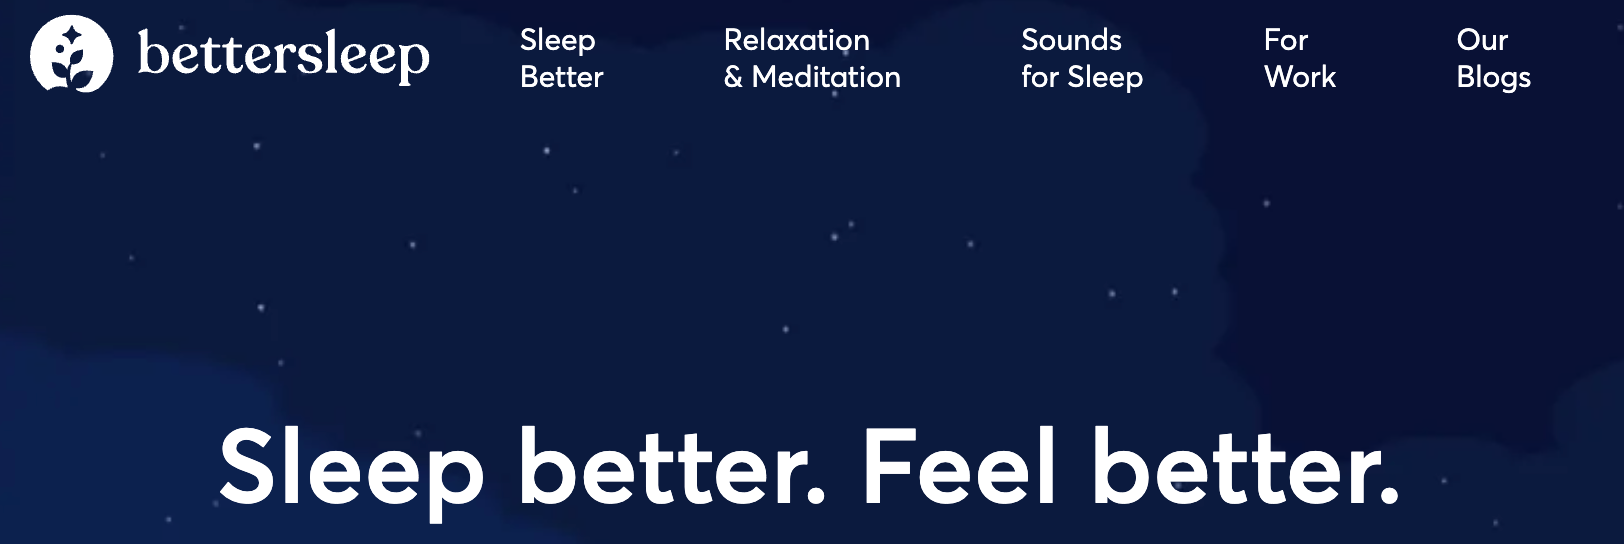 BetterSleep website homepage